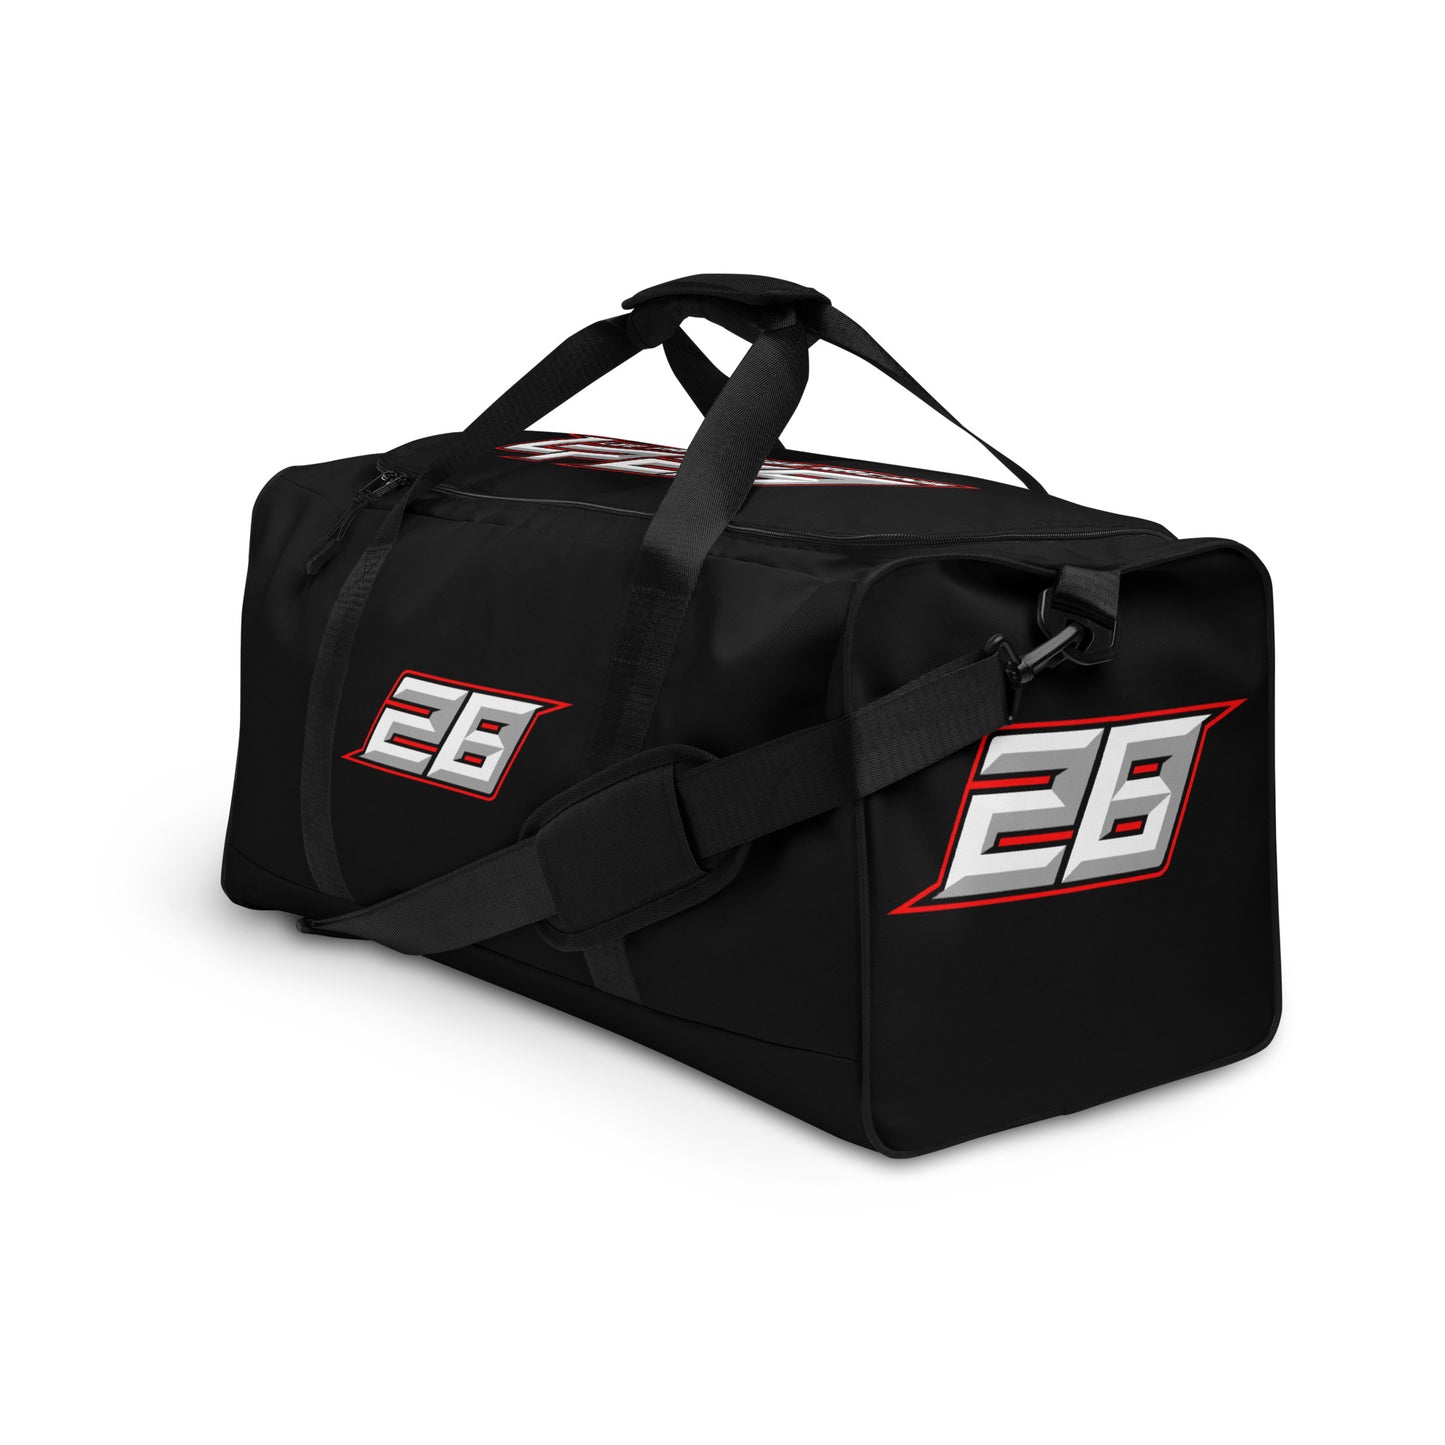 LEE PARTRIDGE RACING Team Duffle bag - black